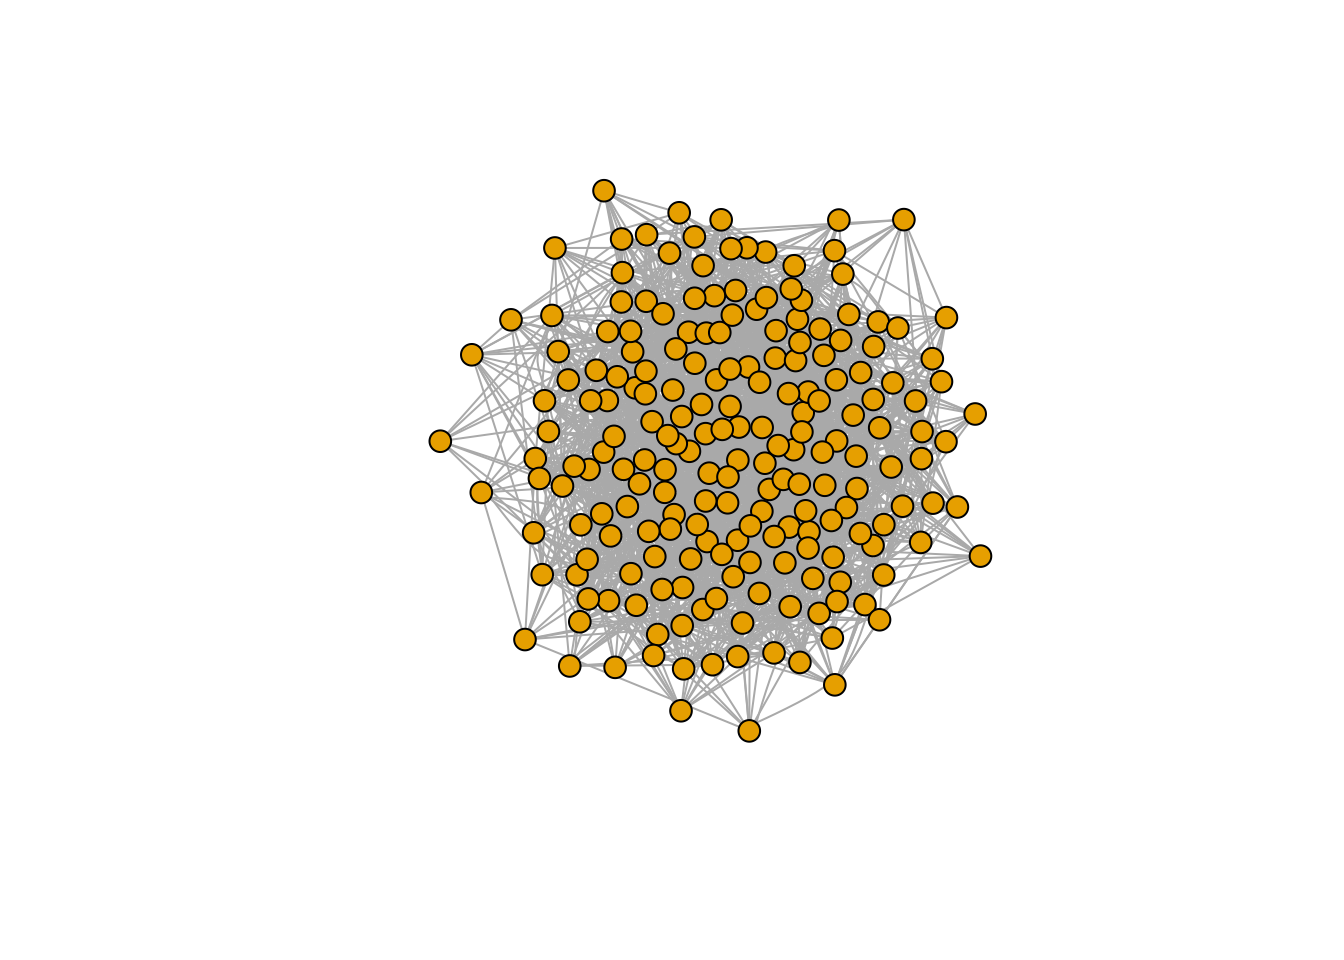 Estructura de una red social representada como grafo.